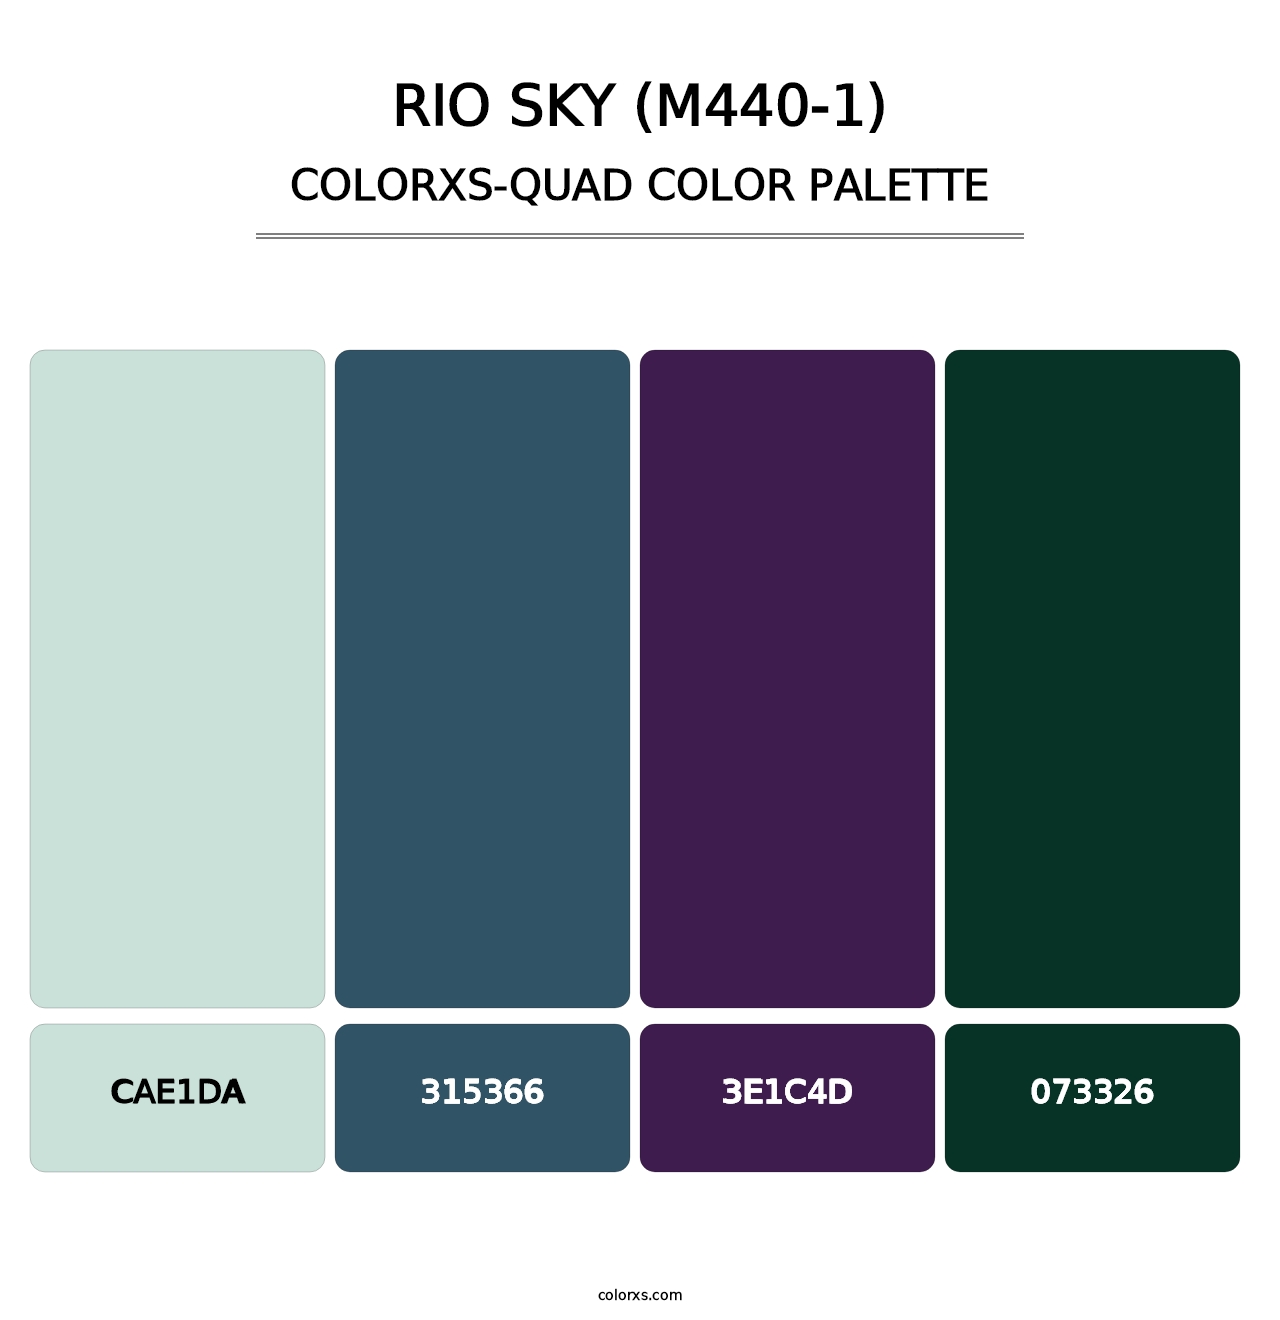 Rio Sky (M440-1) - Colorxs Quad Palette